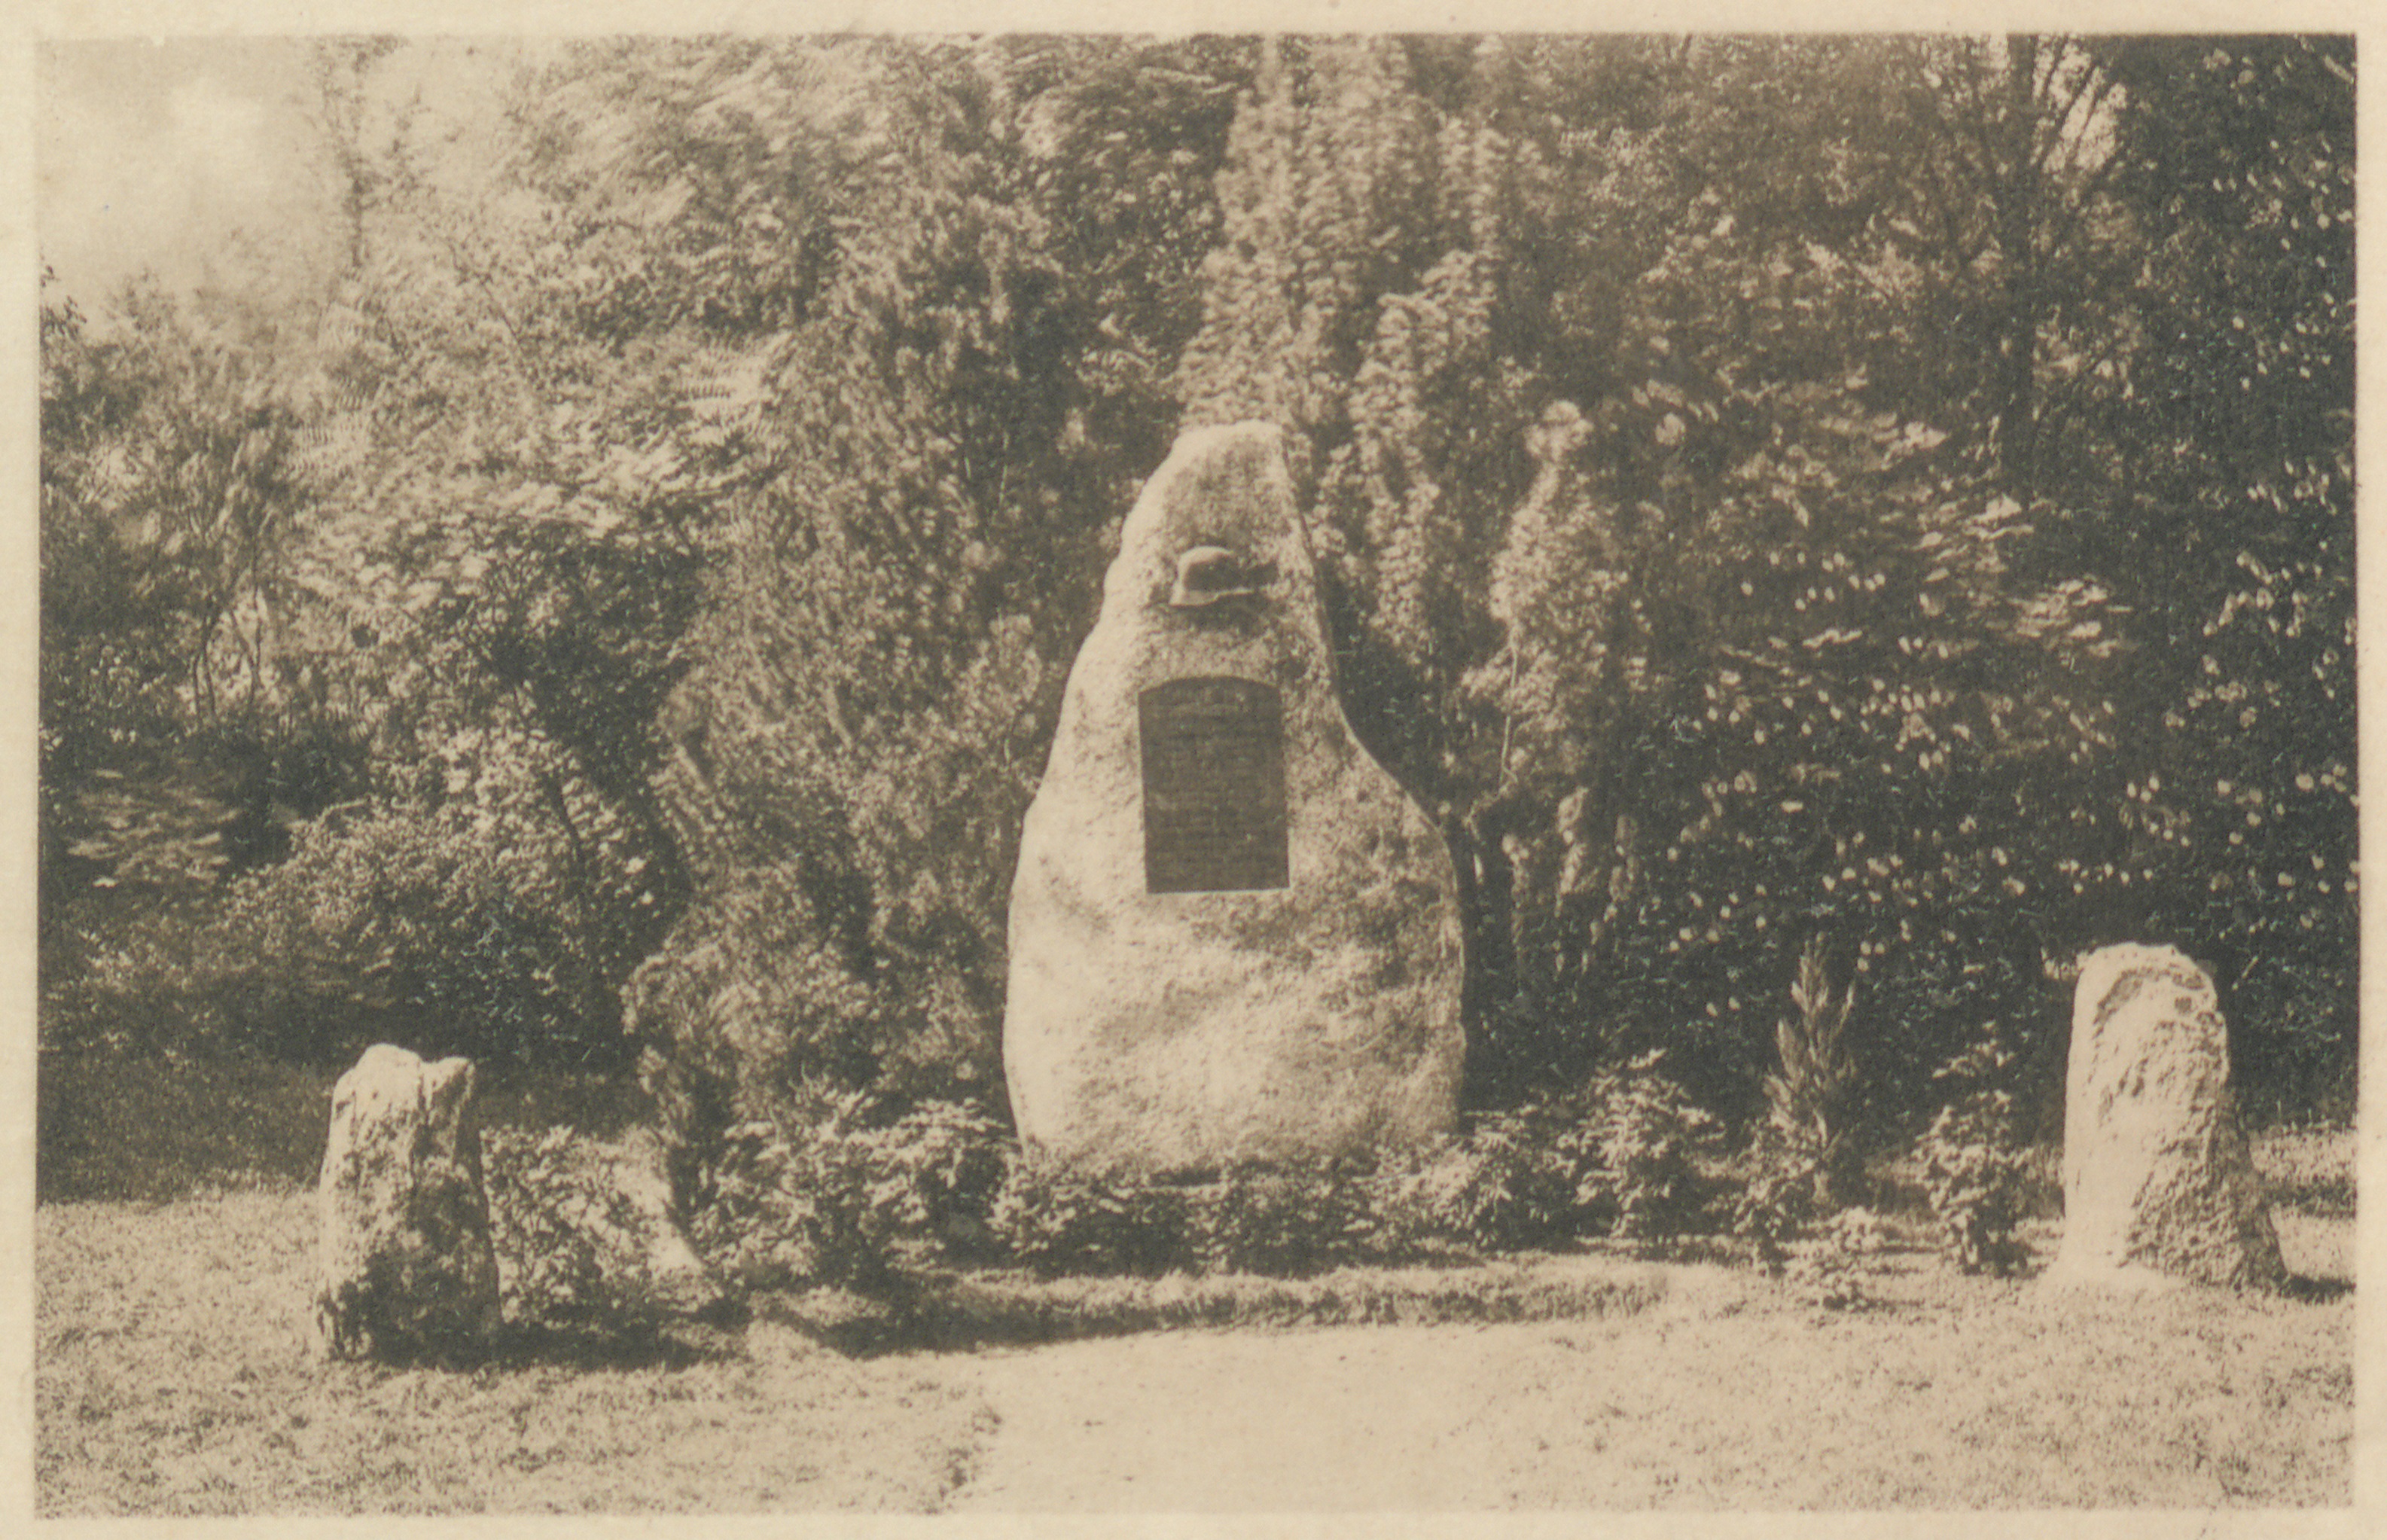  Monument commémoratif pour le 111e RIR à Stockach (1927/1934)(Quelle: Landesarchiv BW, GLAK F-S Postkarten 830)